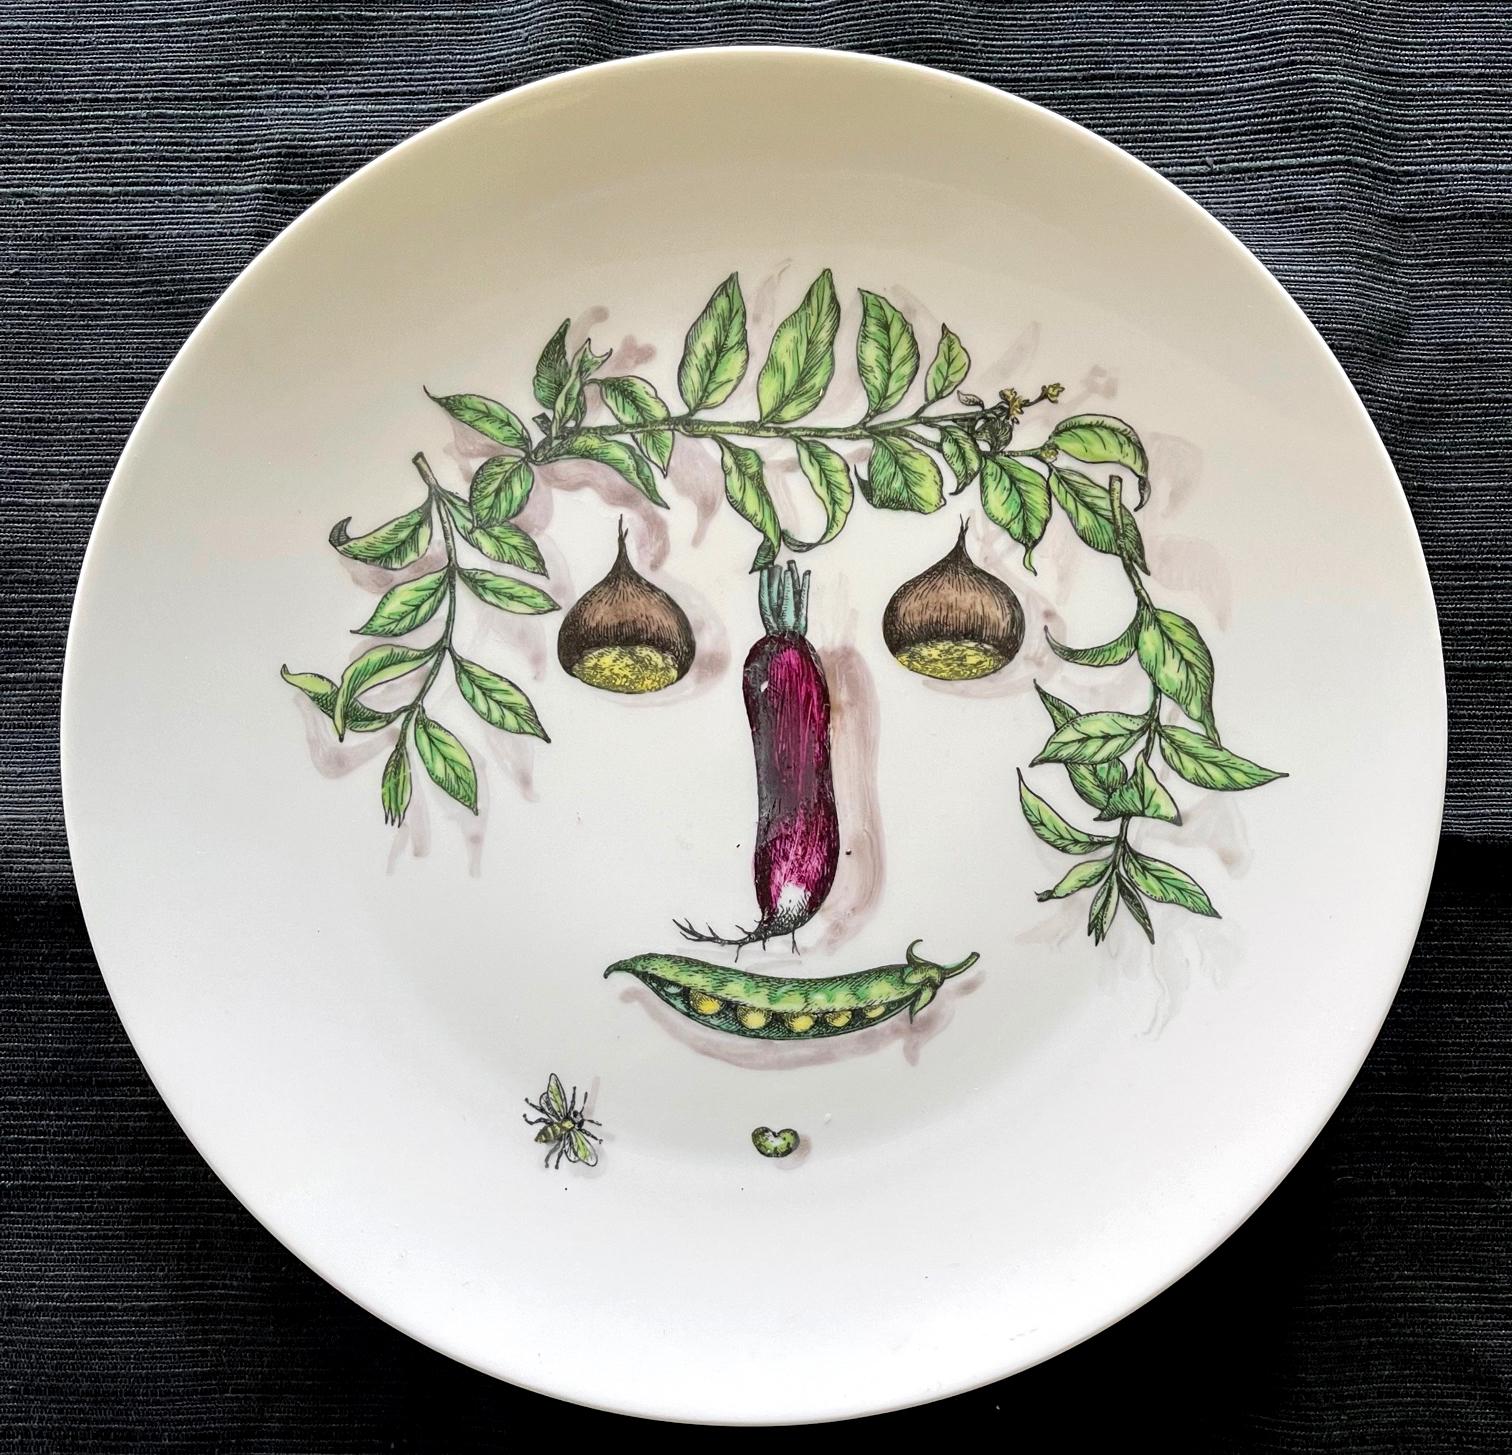 Fornasetti Porzellanteller mit Gesicht aus arrangiertem Gemüse. Auf der Unterseite in Grün gestempelt 11, Fornasetti-Milano, Made in Italy, Arcimboldesca'